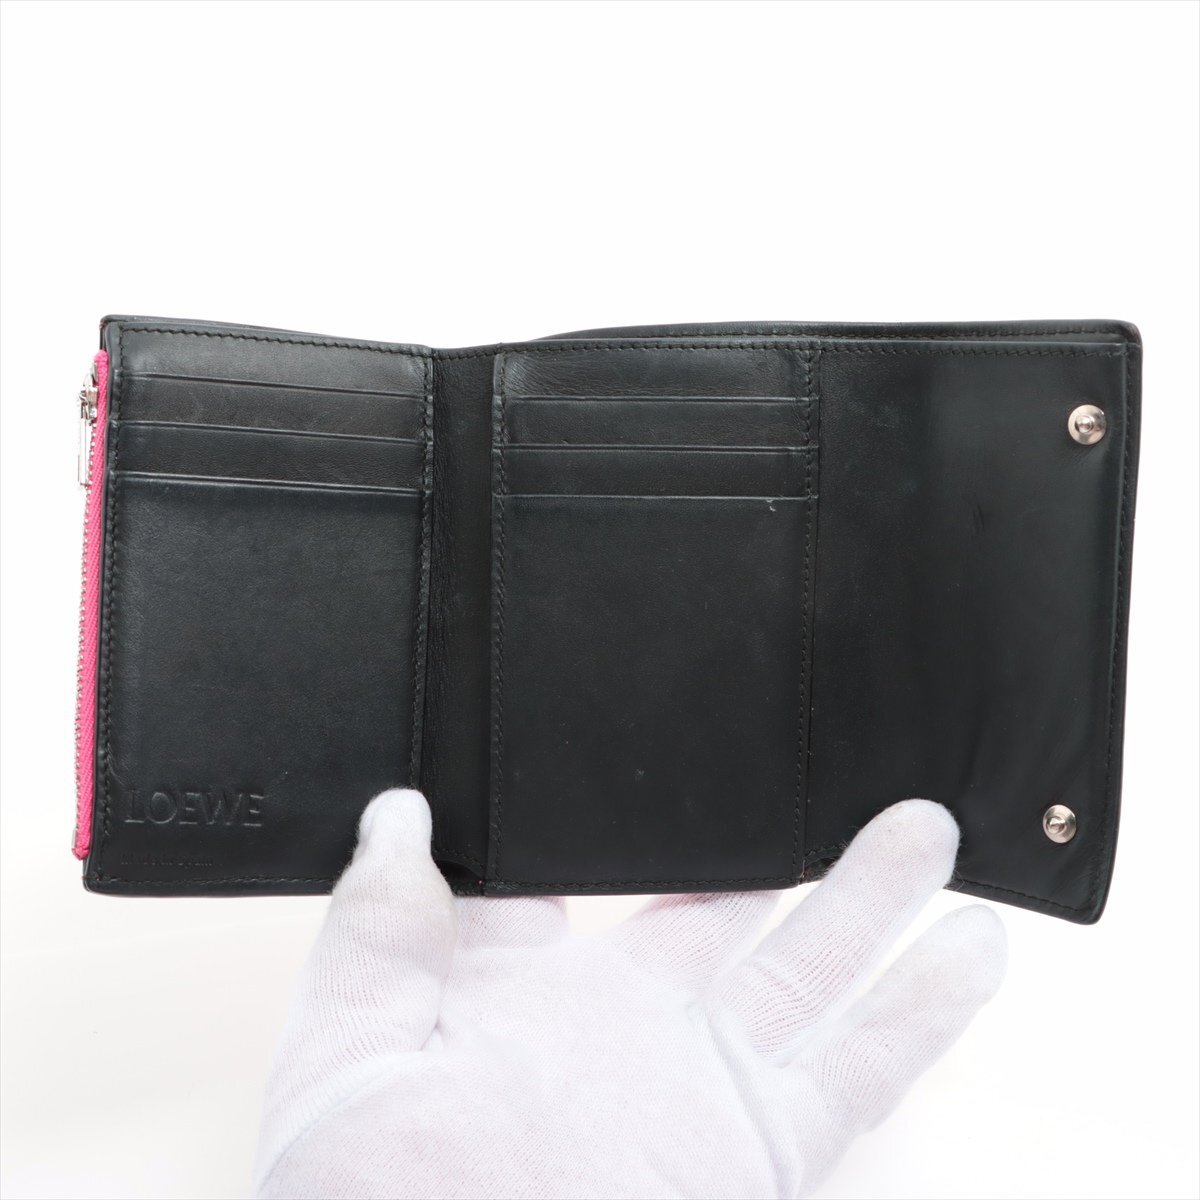 1 иен прекрасный товар # Loewe # дыра грамм повтор кожа три складывать кошелек compact бумажник розовый симпатичный популярный стандартный женский EFT 1128-E26